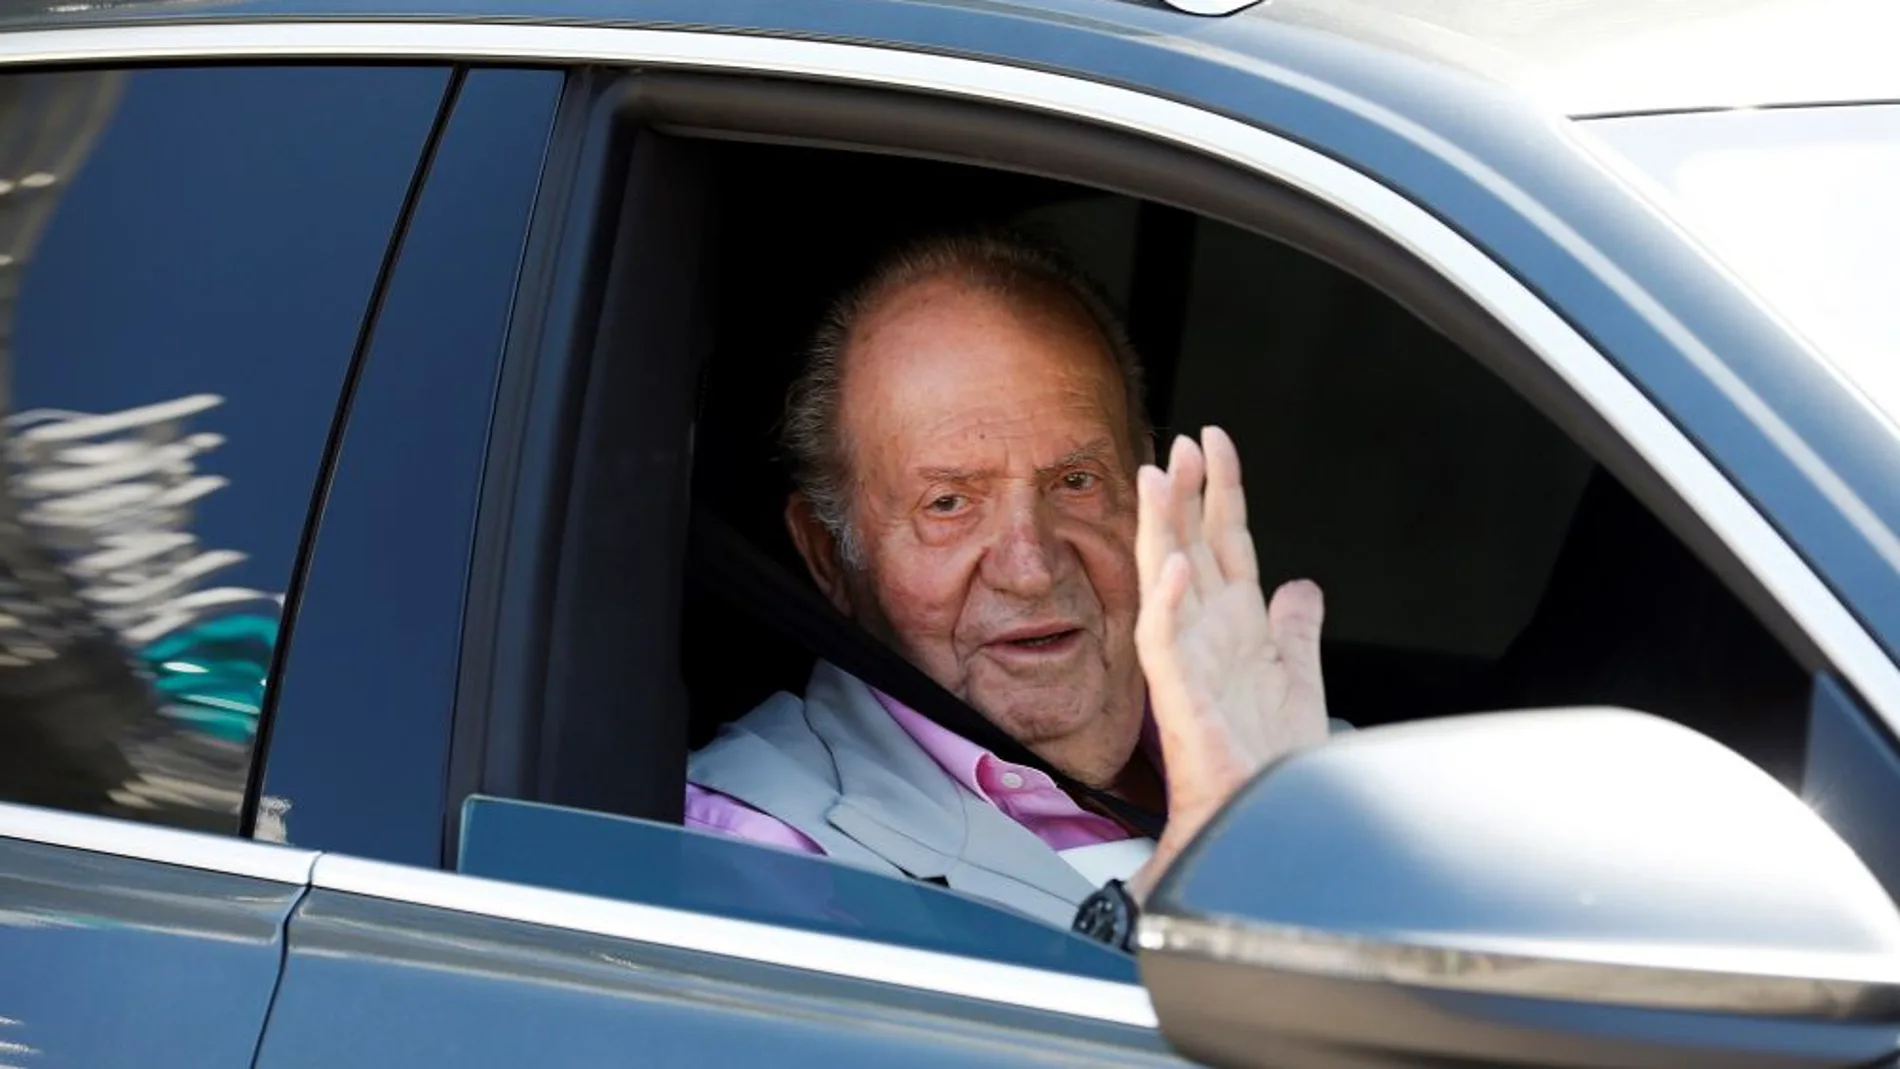 laSexta Noticias Fin de Semana (31-08-19) El rey Juan Carlos, tras recibir el alta hospitalaria: "Me encuentro fenomenal, con tuberías y cañerías nuevas"